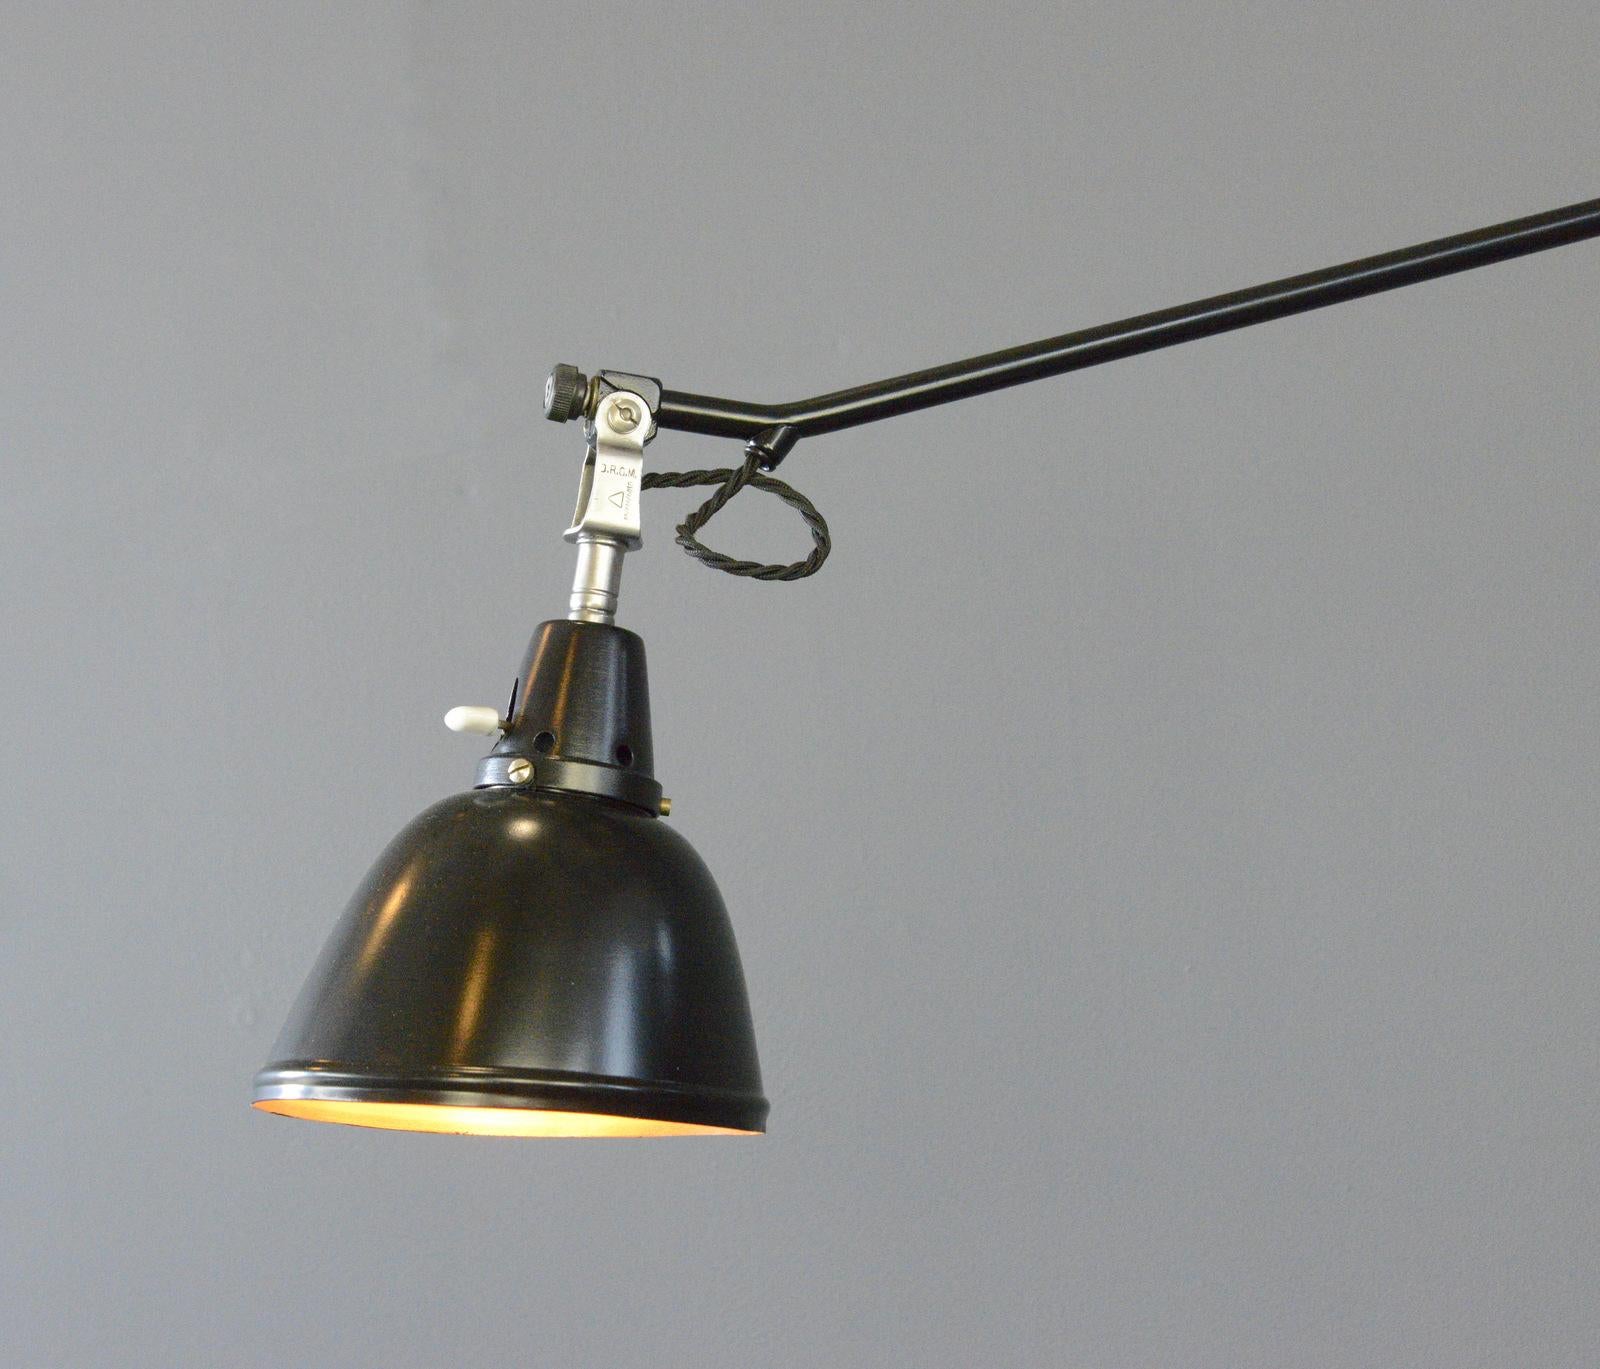 Midgard Typ 114 Tischlampe von Curt Fischer, ca. 1930er Jahre (Bauhaus)